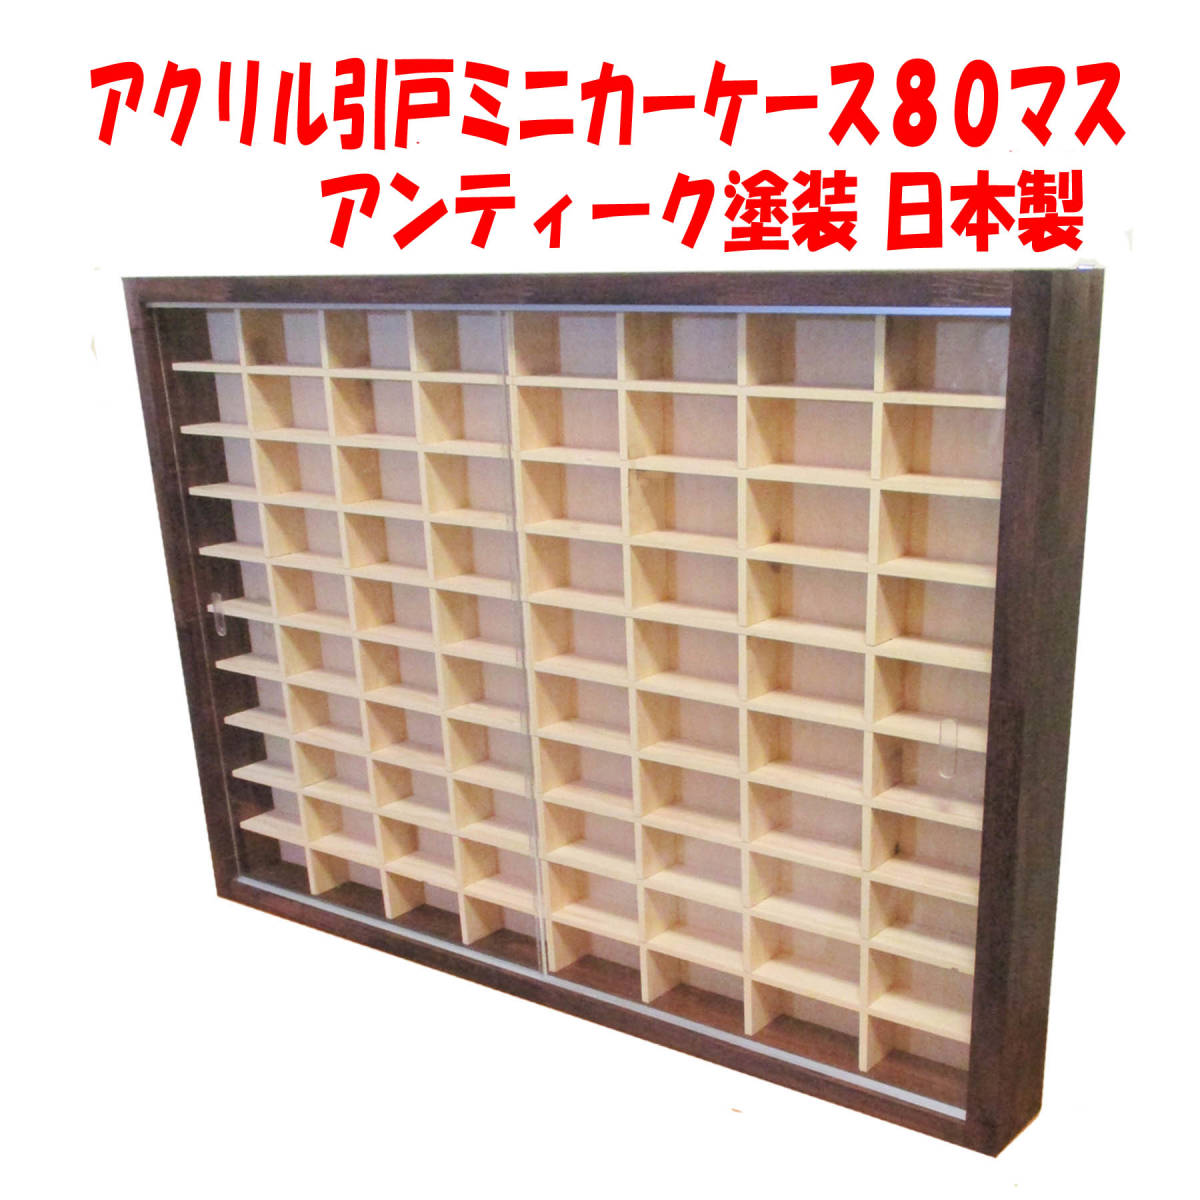 ◇日本製の樽 カウンター 飾り棚 家庭用サウナ DIY